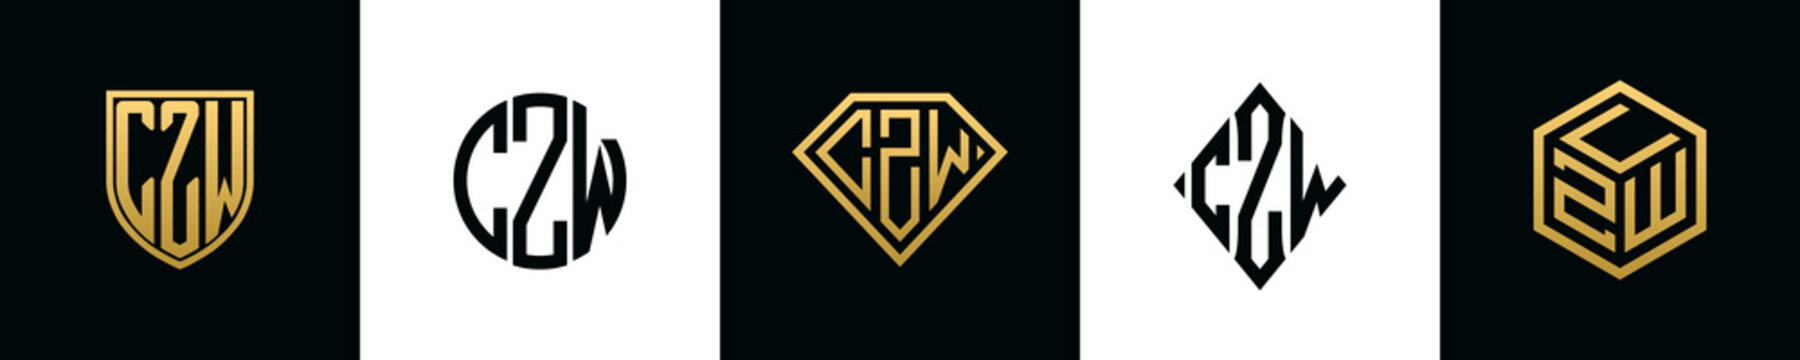 Initial letters CZW logo designs Bundle